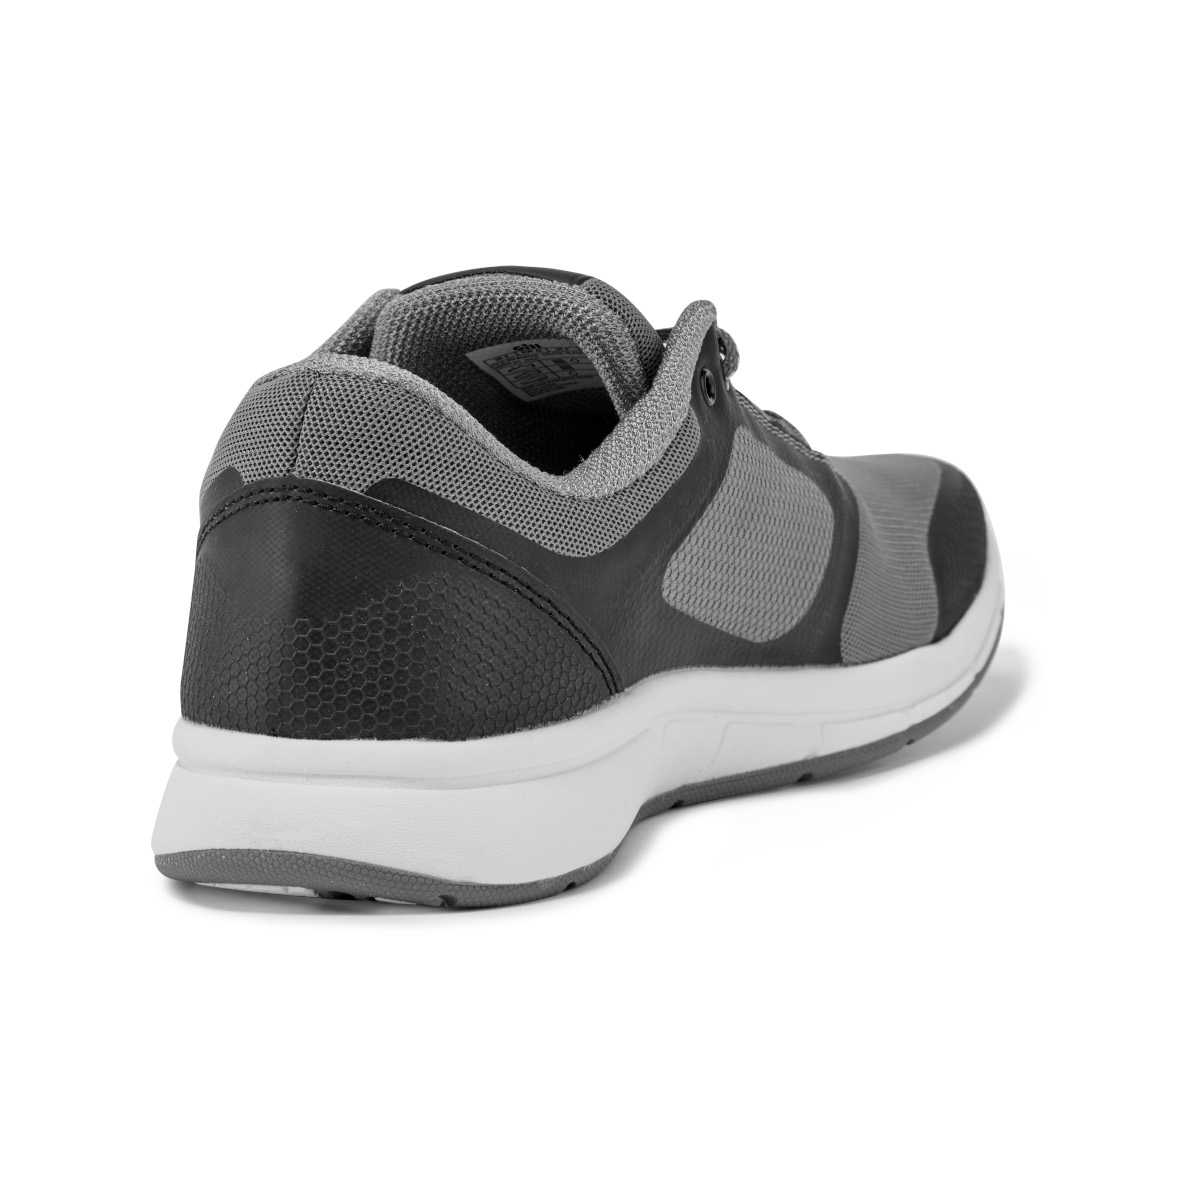 Gill Mawgan chaussure de voile, unisexe - noir/gris, pointure 44